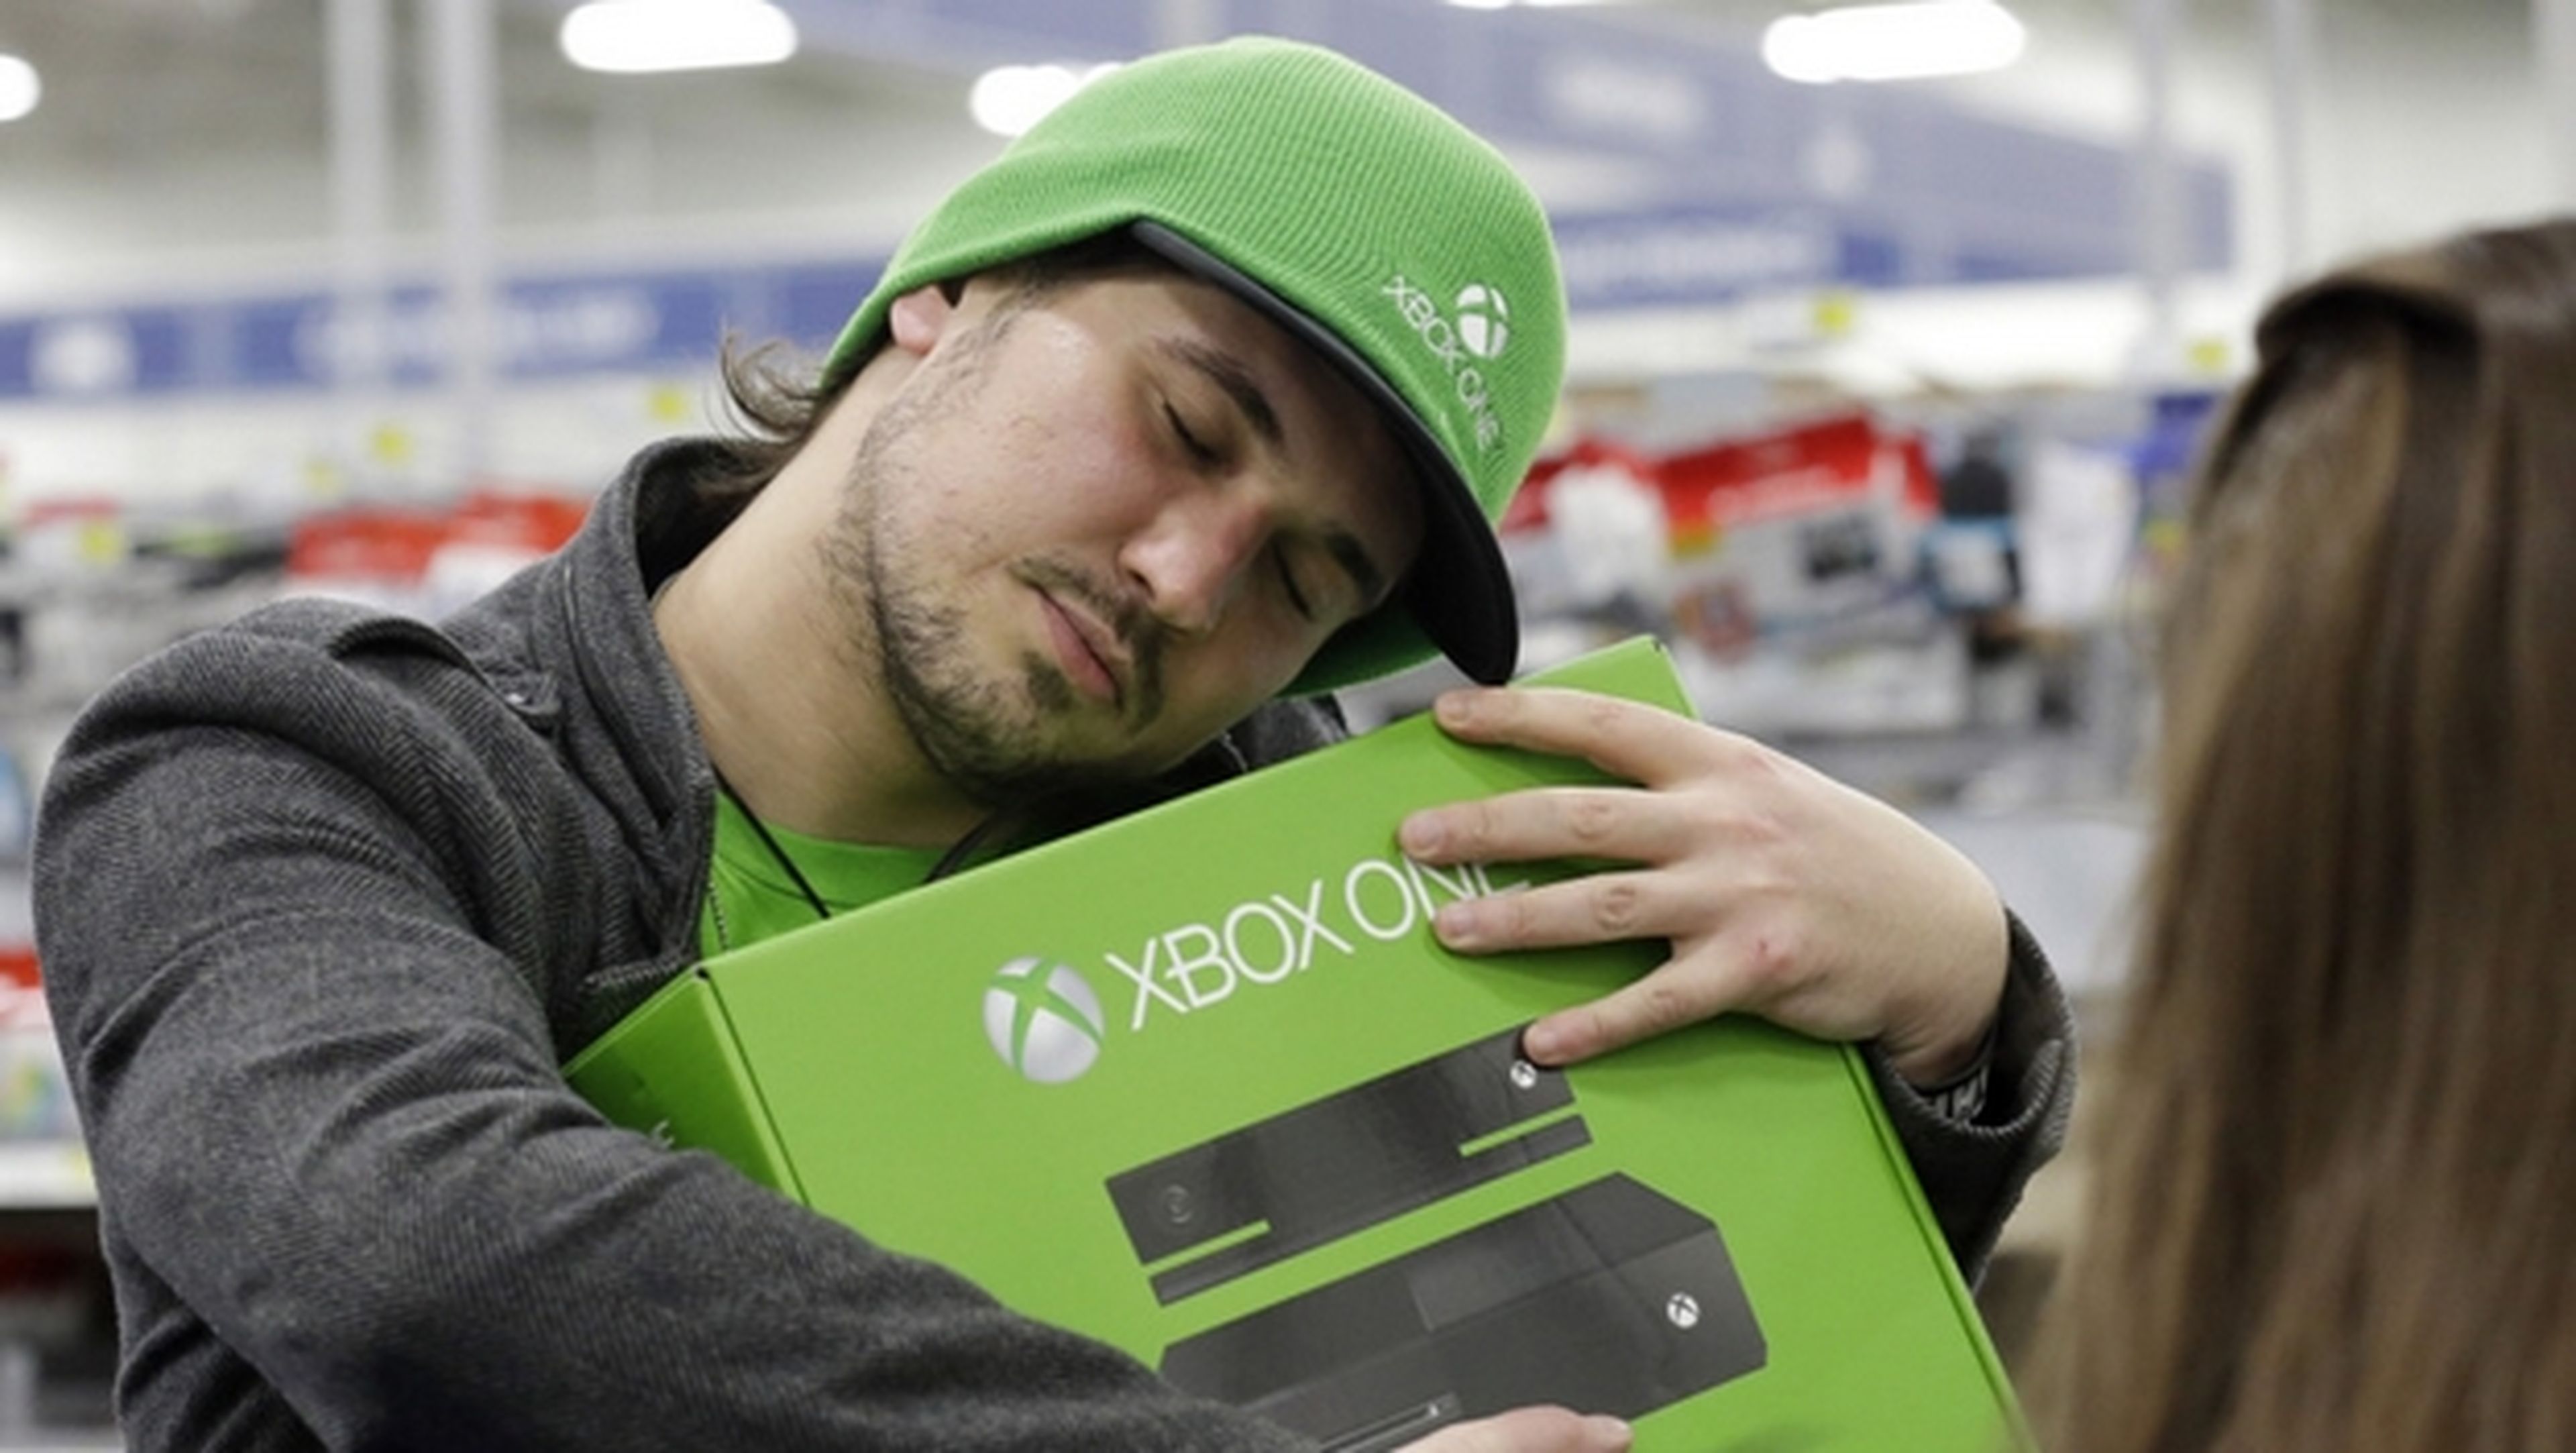 Microsoft reemplaza consolas Xbox One con exceso de ruido.